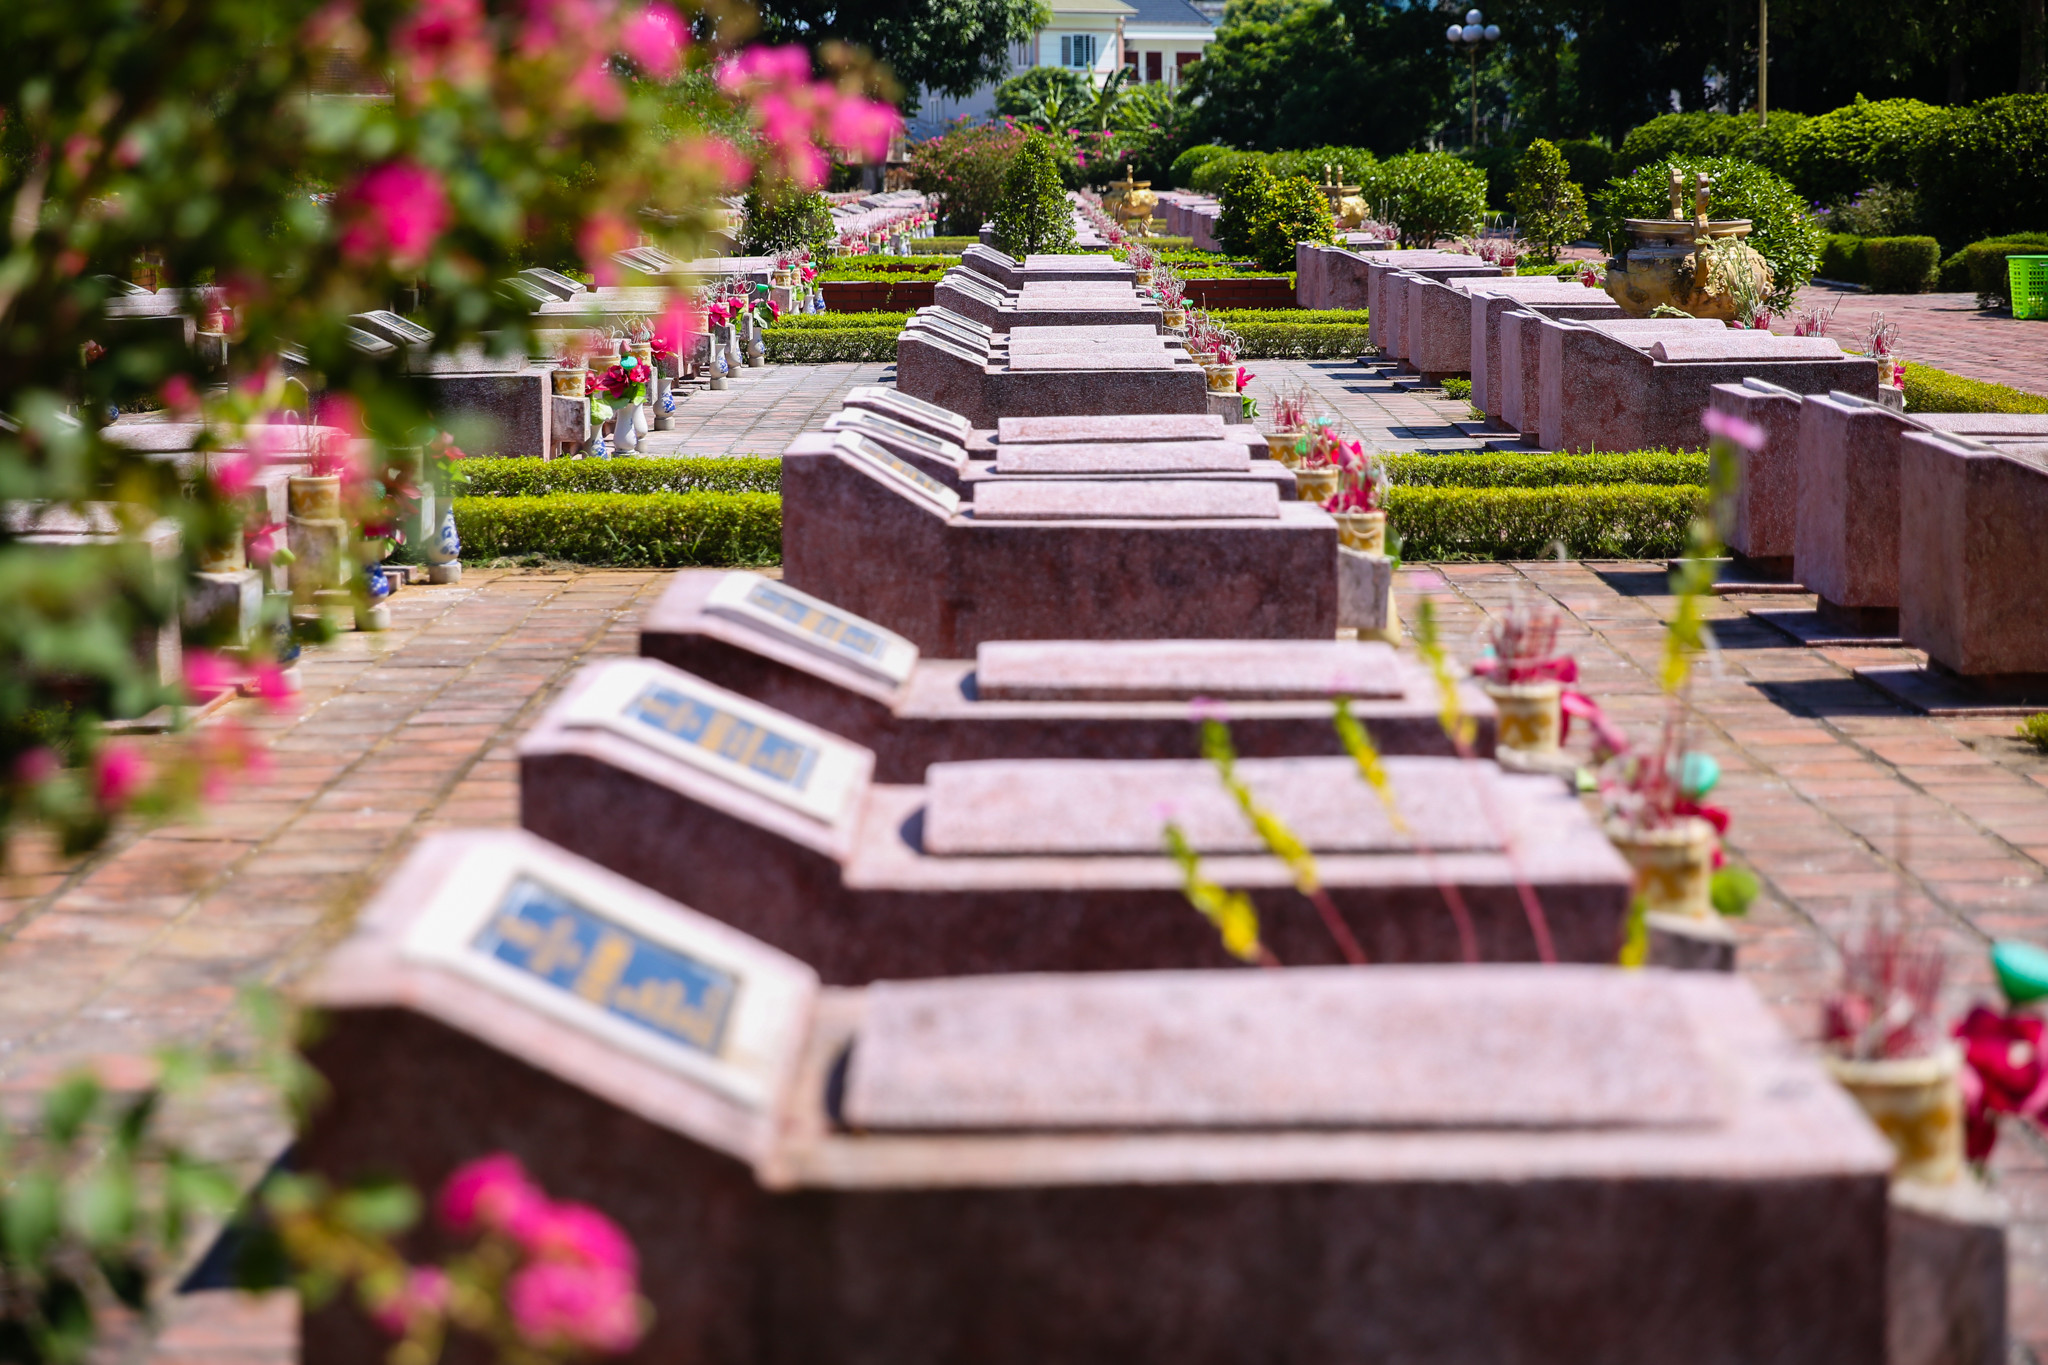 Nghĩa trang Liệt sĩ TP Vinh có tổng số 1200 ngôi mộ trong đó có 935 ngôi mộ có thông tin của liệt sĩ. Đây là nghĩa trang có tất cả các liệt sĩ của các cuộc kháng chiến chống Pháp từ những thời 1930 - 1931. Tại nghĩa trang này có các liệt sĩ đã ghi danh vào sổ vàng của đất nước như Liệt sĩ Lê Mao, Lê Viết Thuật, Lê Doãn Sửu. Ảnh: Đức Anh